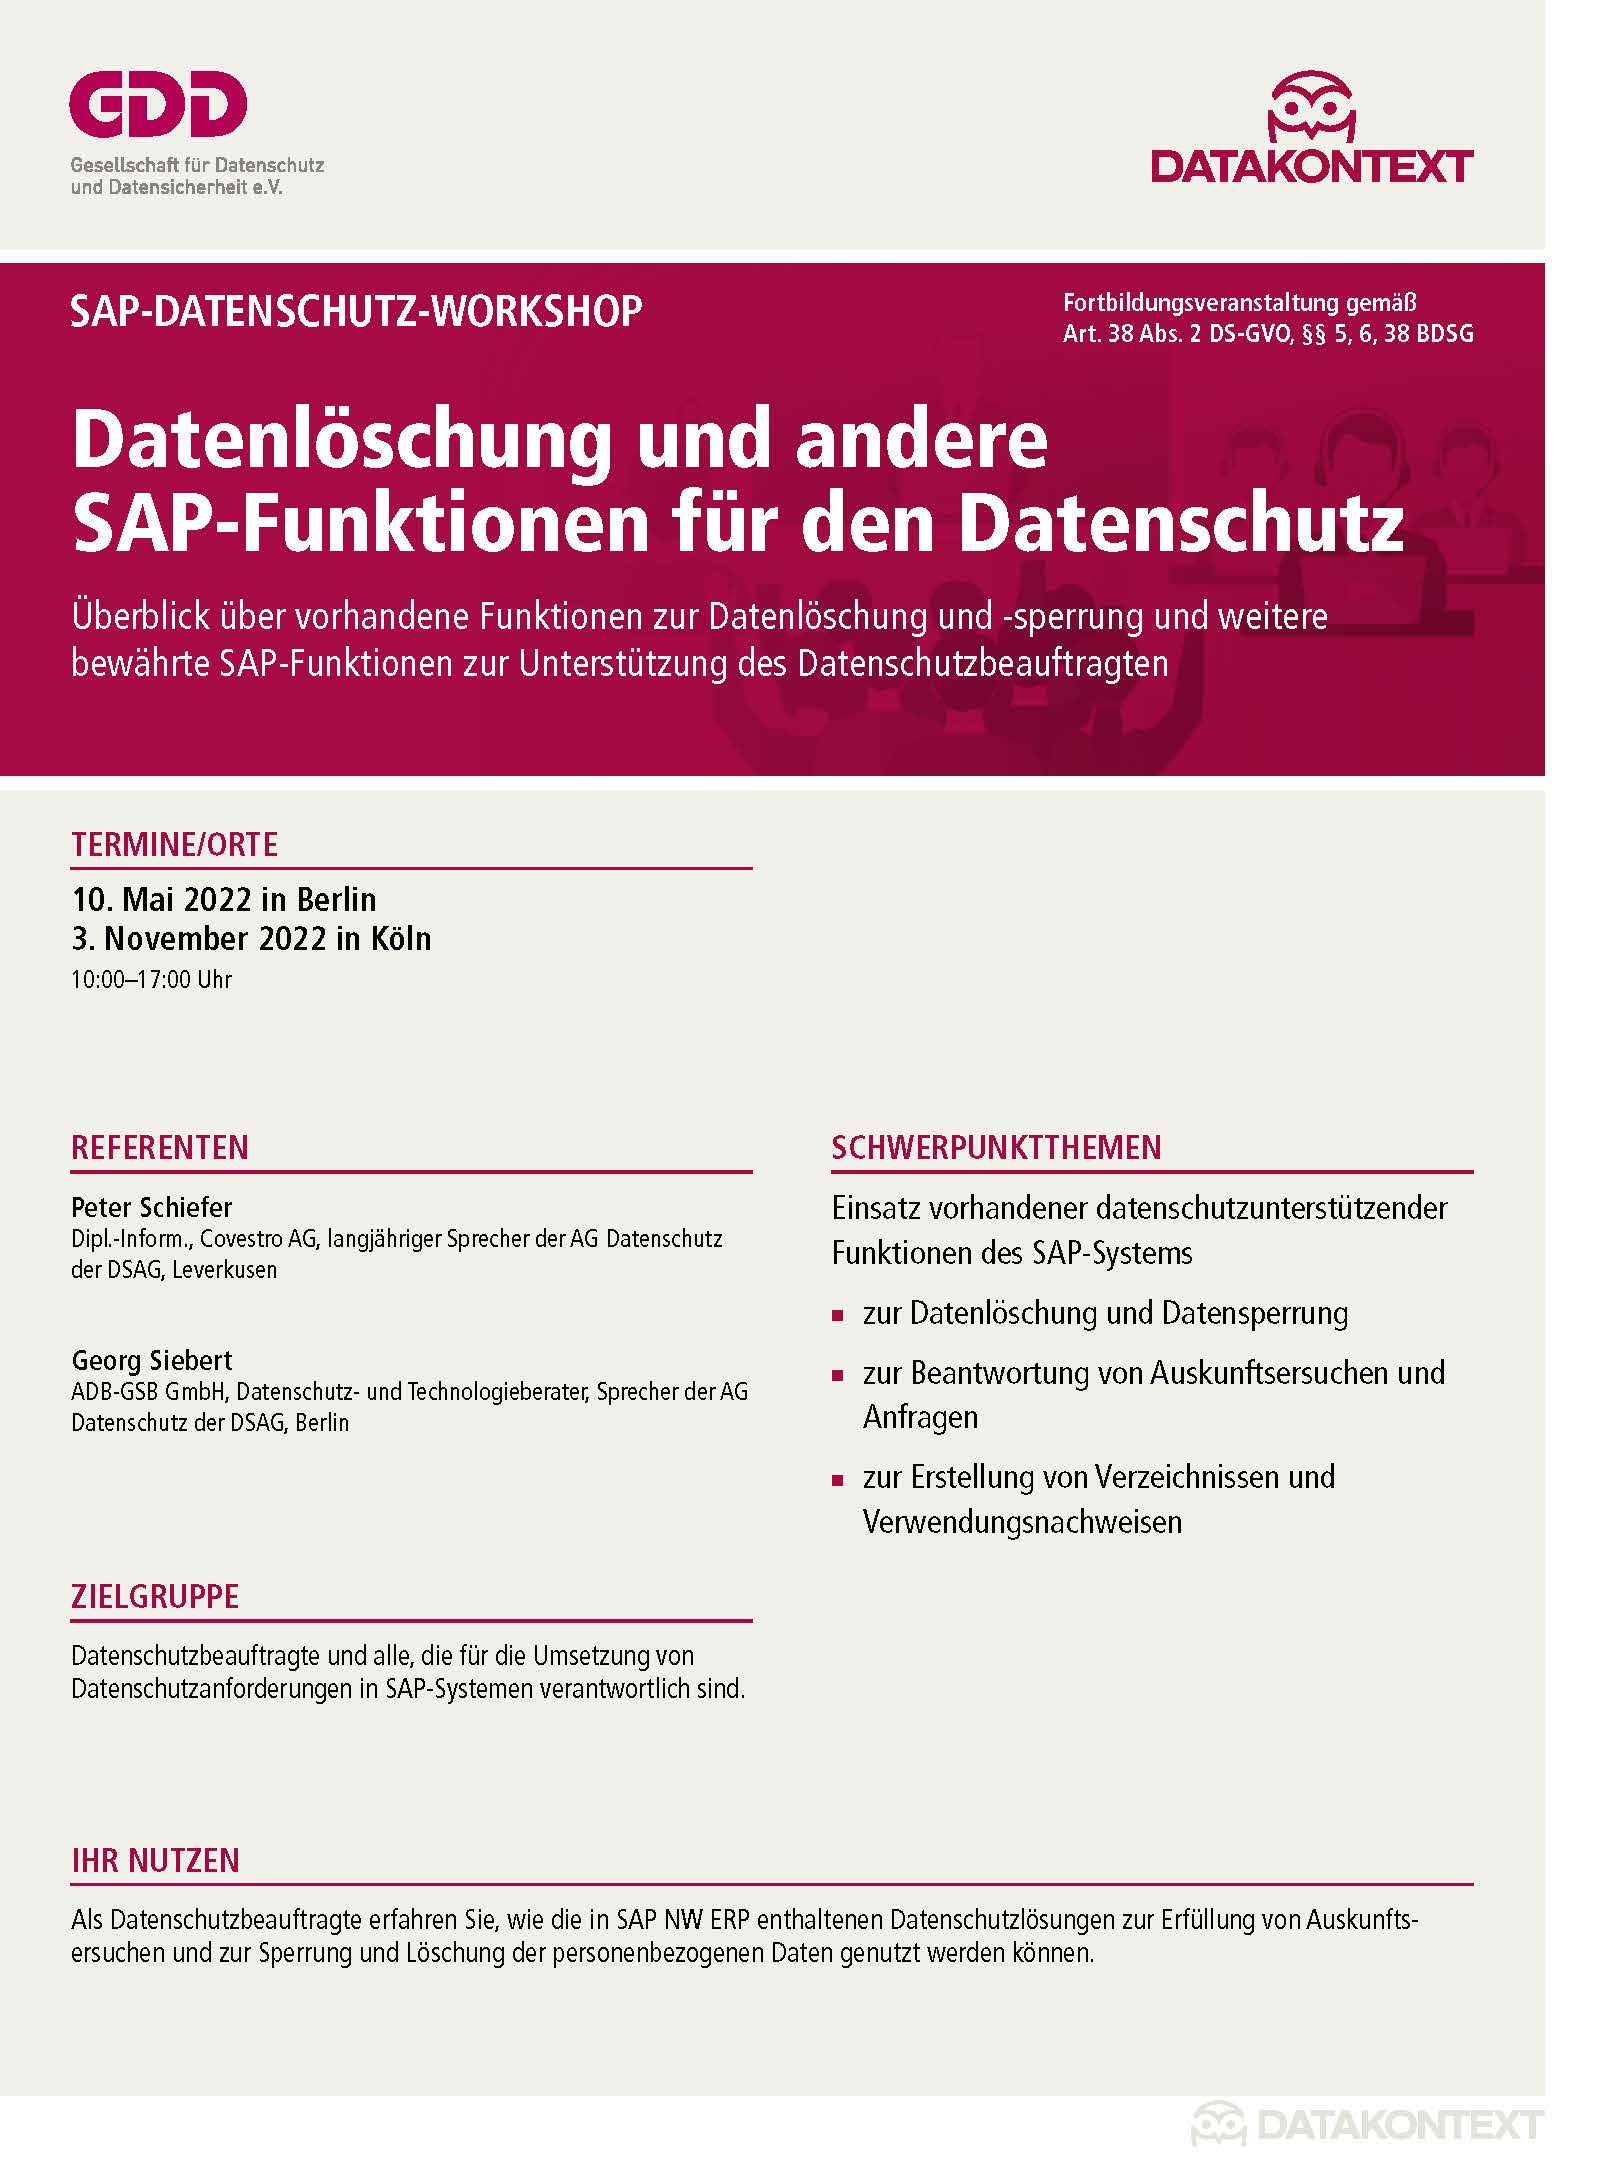 Datenlöschung und andere SAP-Funktionen für den Datenschutz